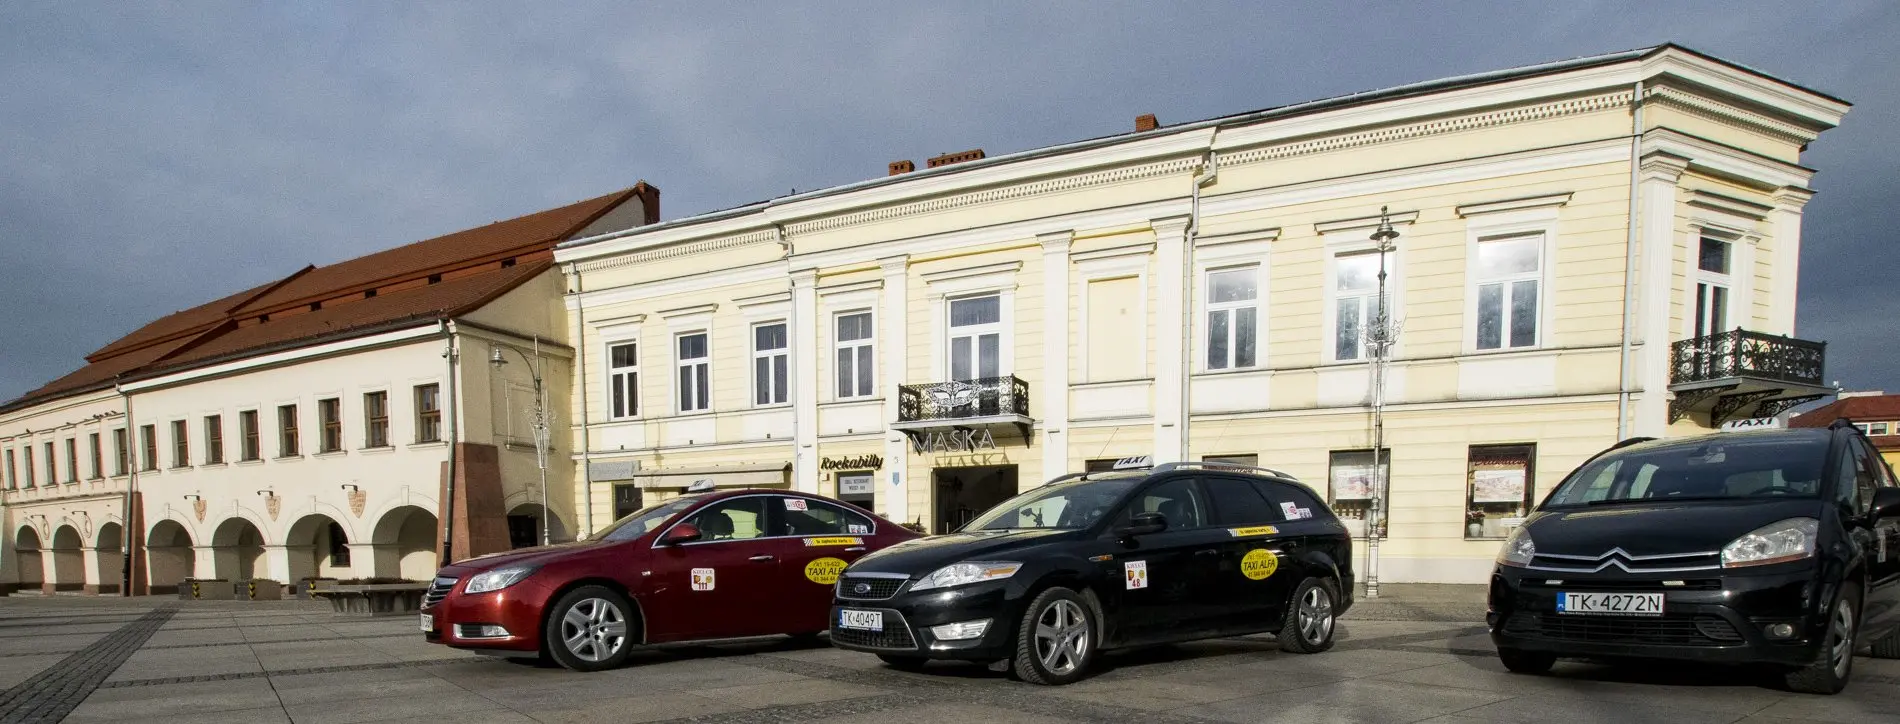 kielce radio taxi - Jak zamówić taksówkę w Kielcach